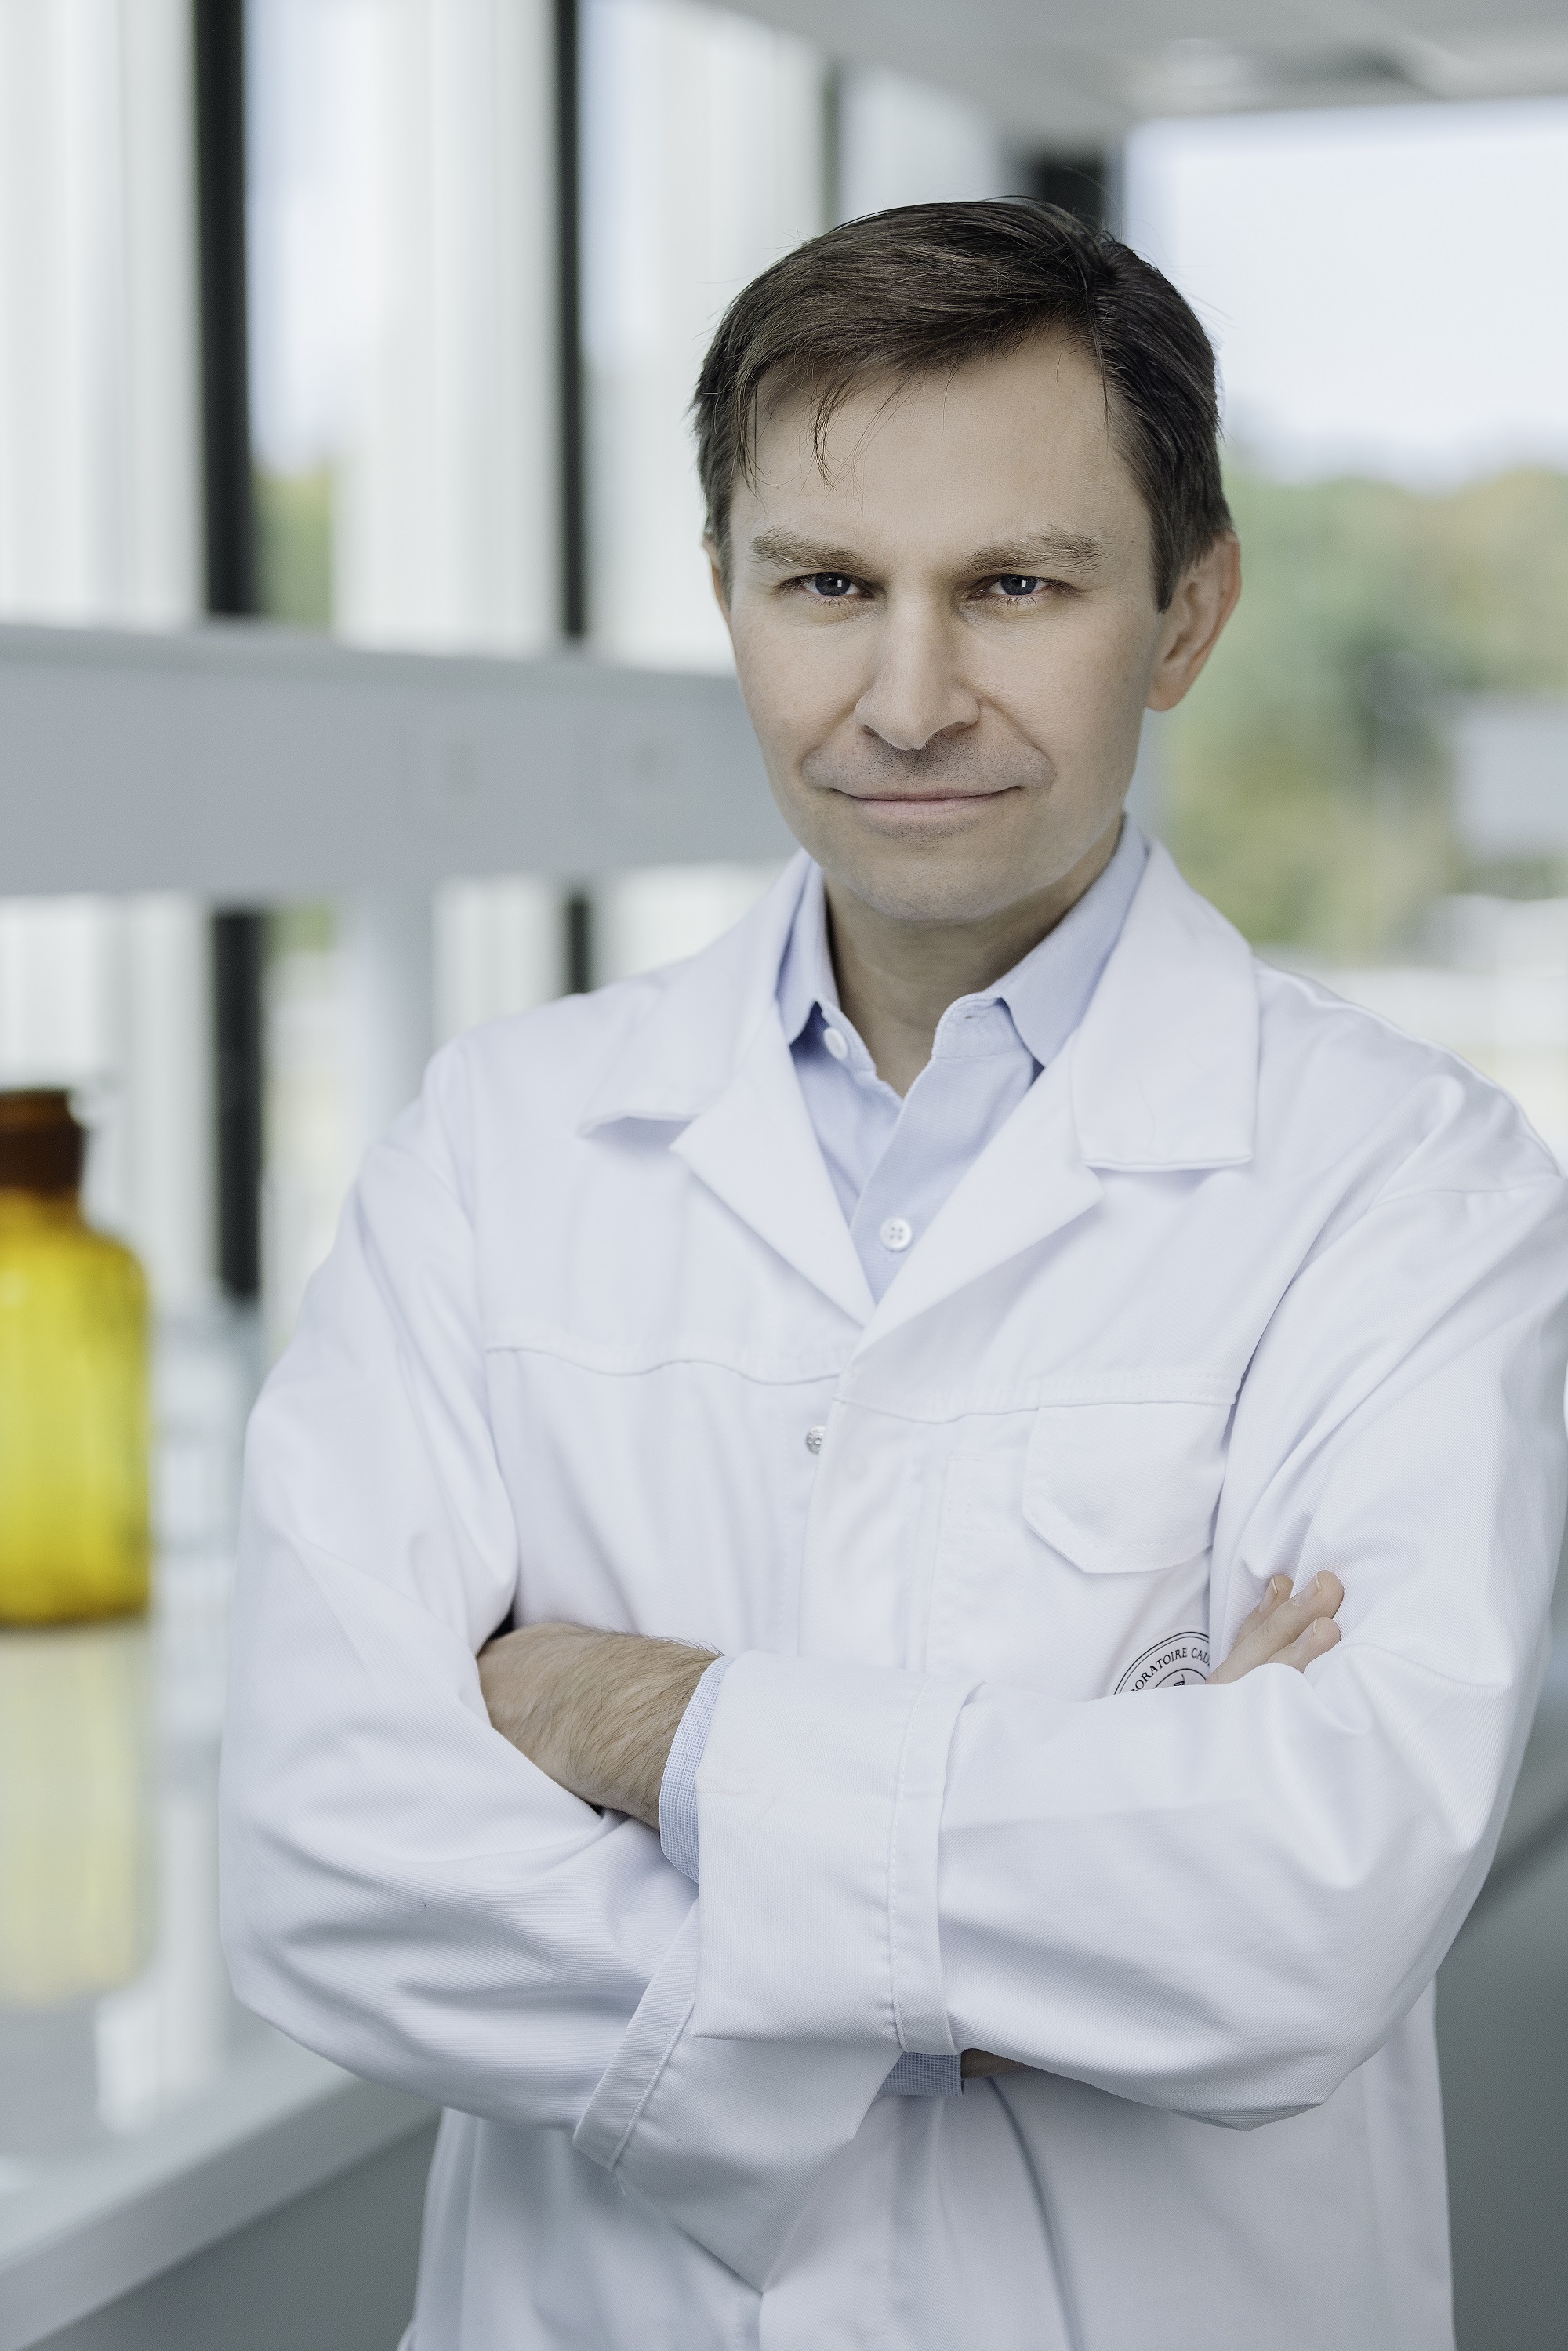 El profesor Dr. David Sinclair es un experto en epigentica y antienvejecimiento general y colaborado de la marca caudalie.